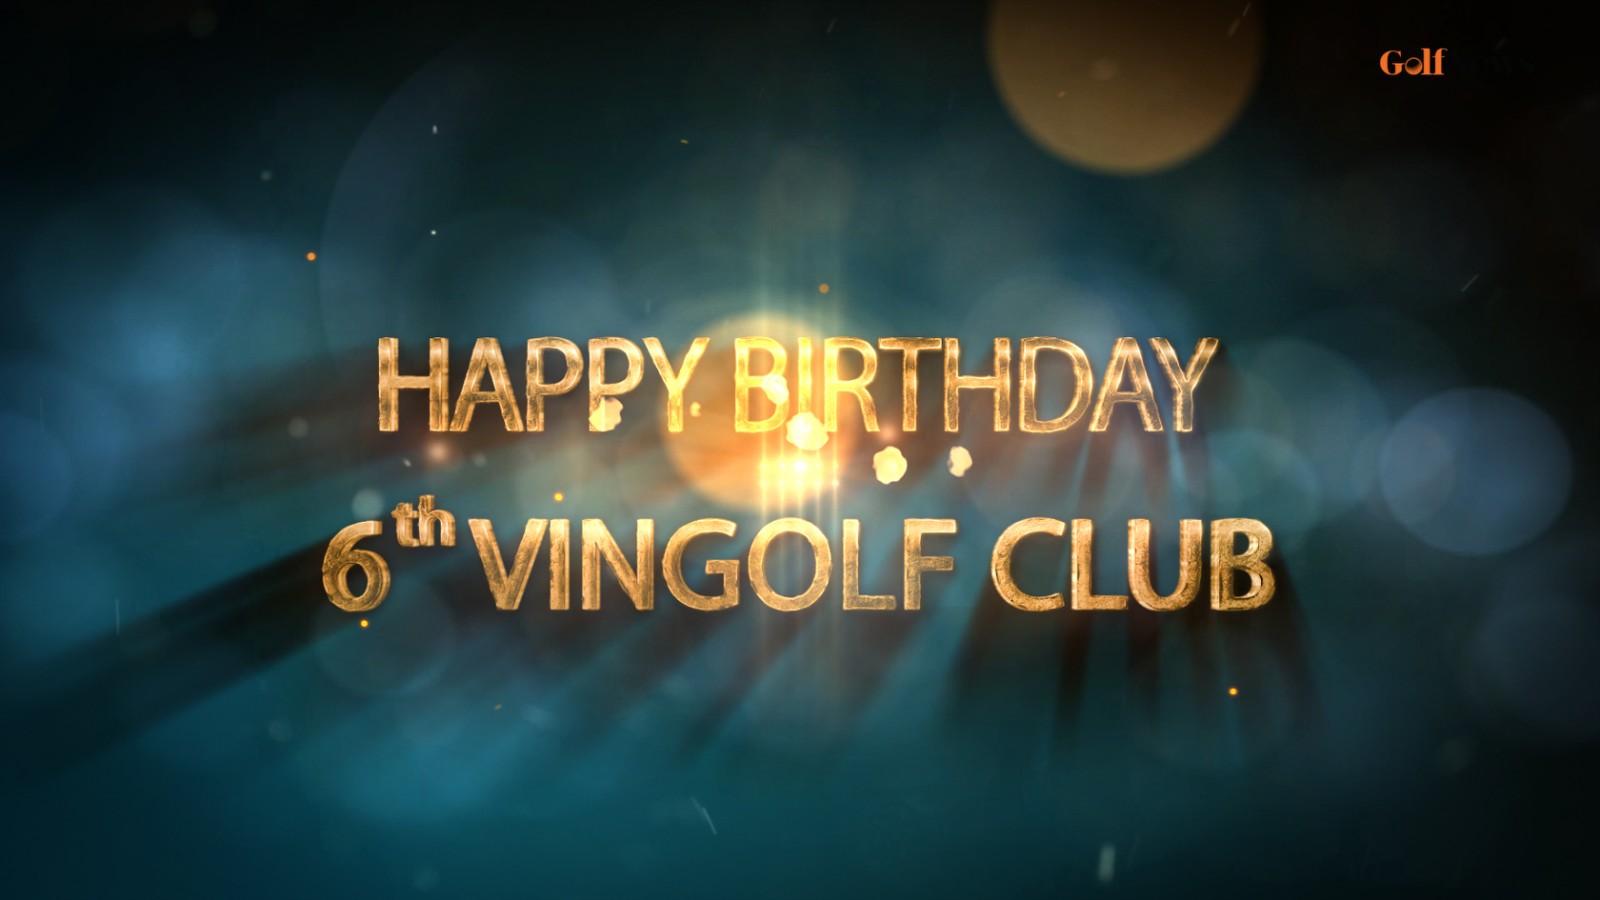 Vingolf Club: Khi láng giềng là những nguời anh em